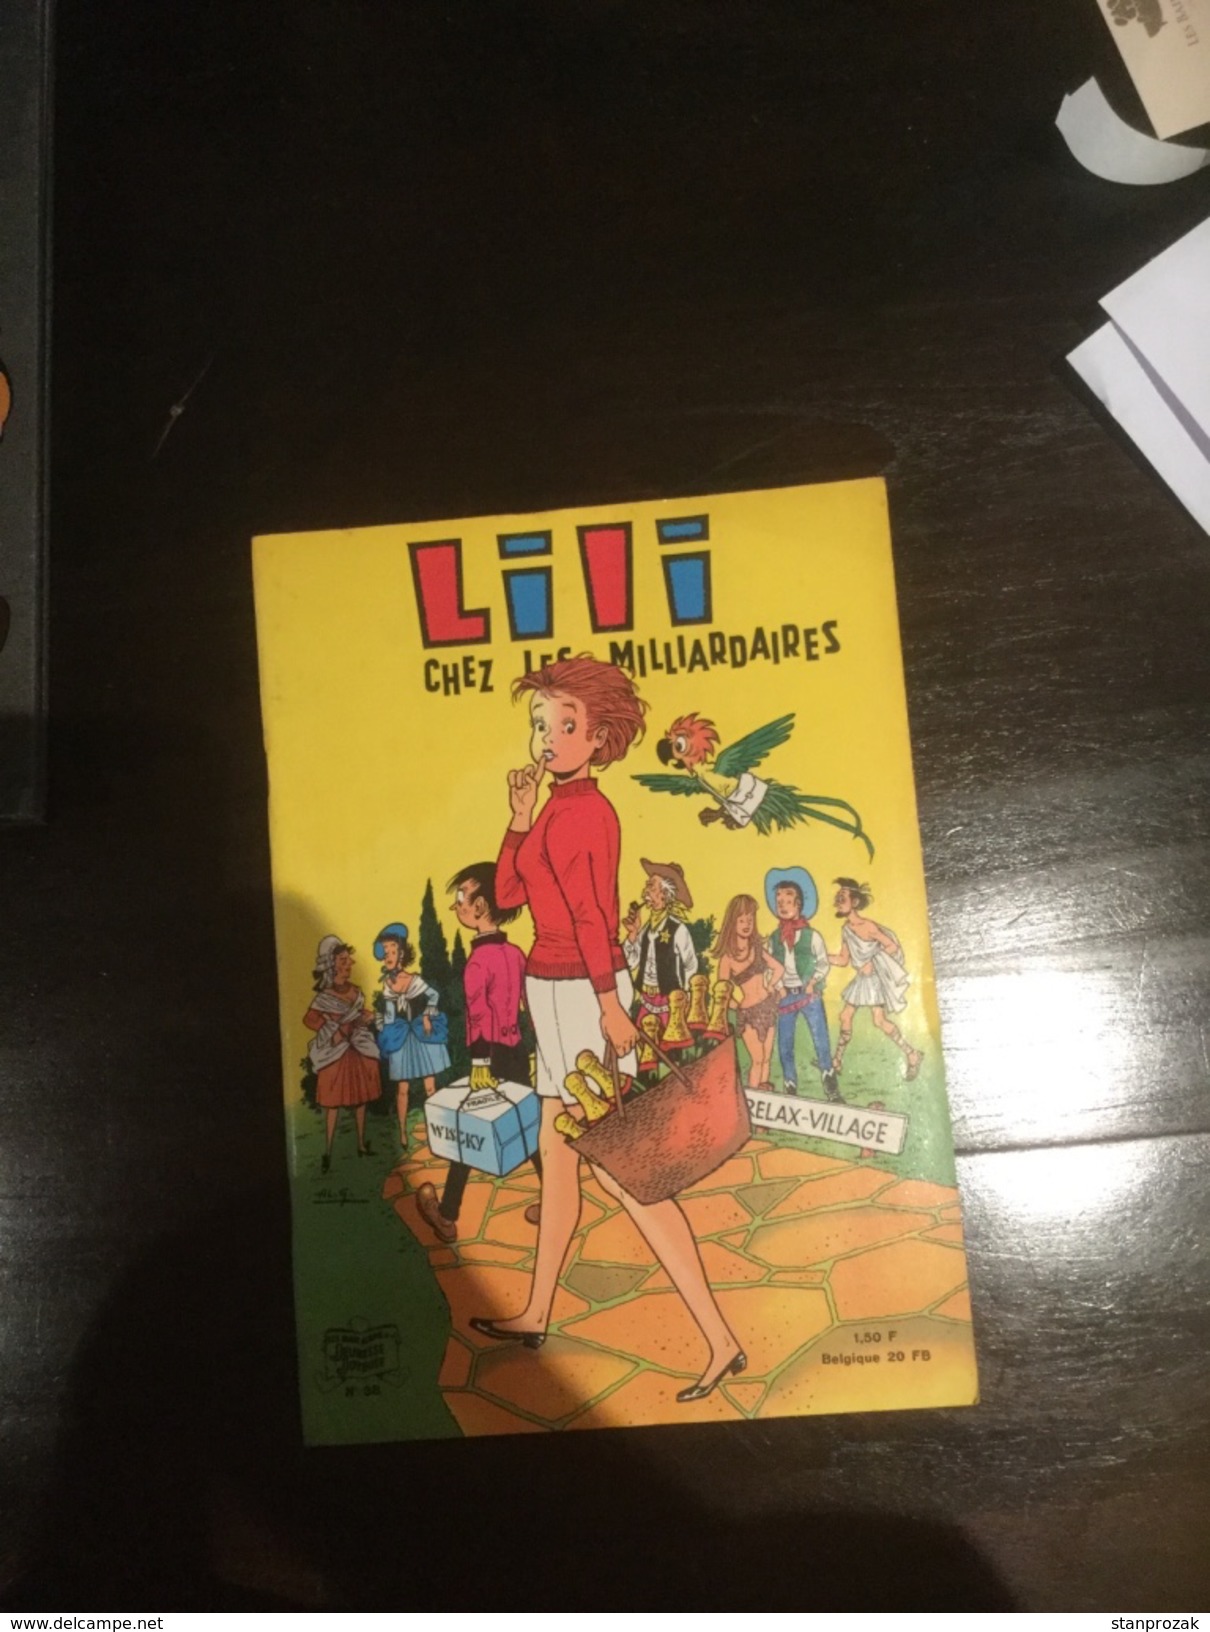 Lili Et Les Milliardaires - Lili L'Espiègle